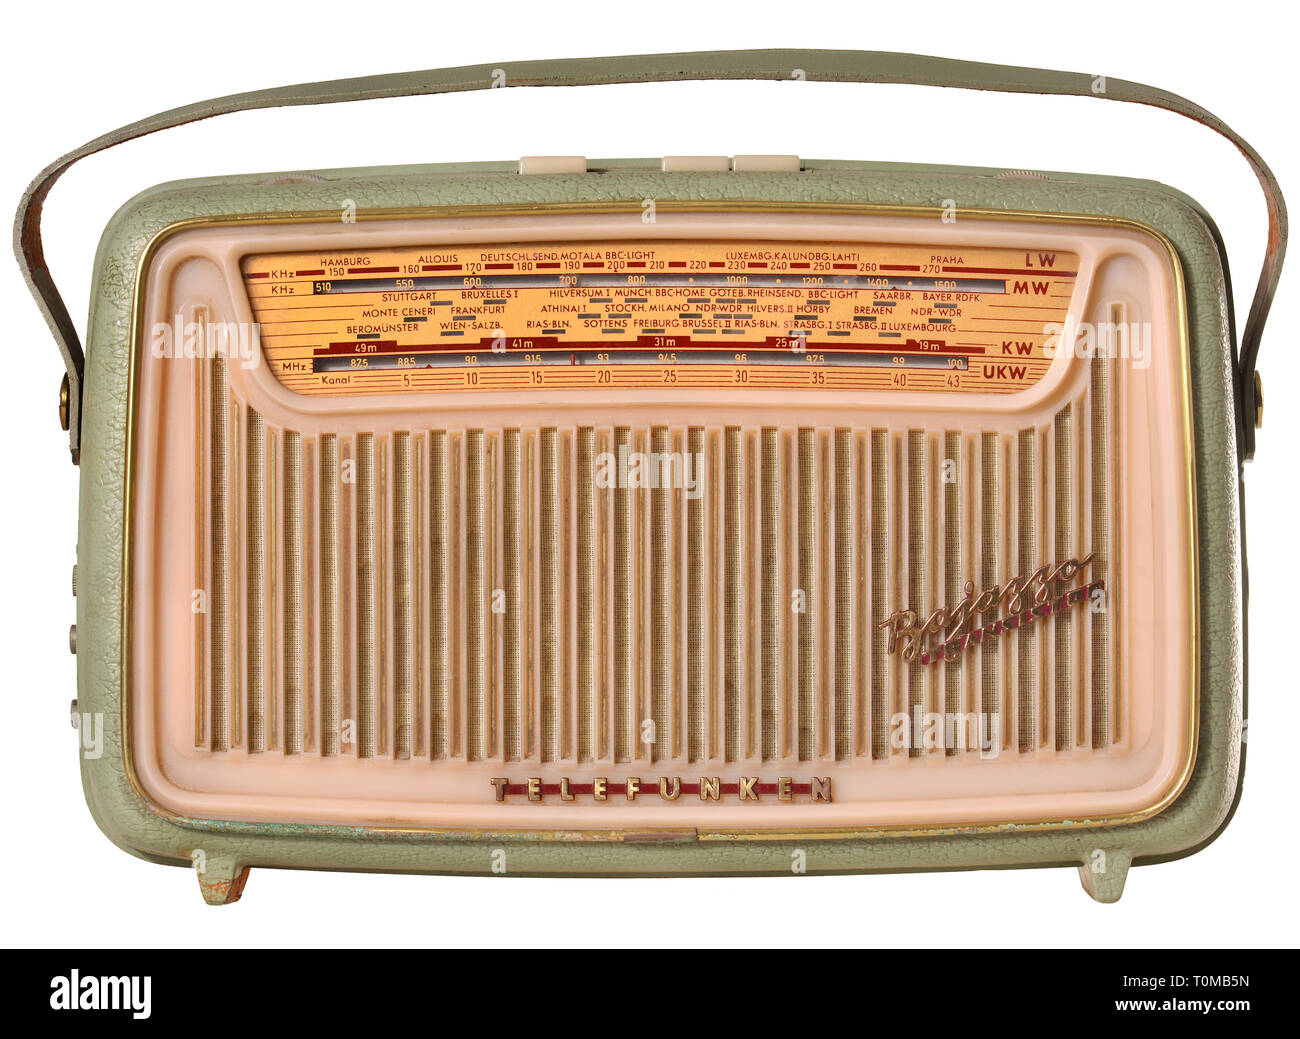 Rundfunk, Radio, Telefunken Bajazzo Transistor, in Ascona grün, Wiegen, 8 kg mit Batterien, aus Polystyrol, damals original Preis: 299,- DM, Deutschland, 1960, Additional-Rights - Clearance-Info - Not-Available Stockfoto